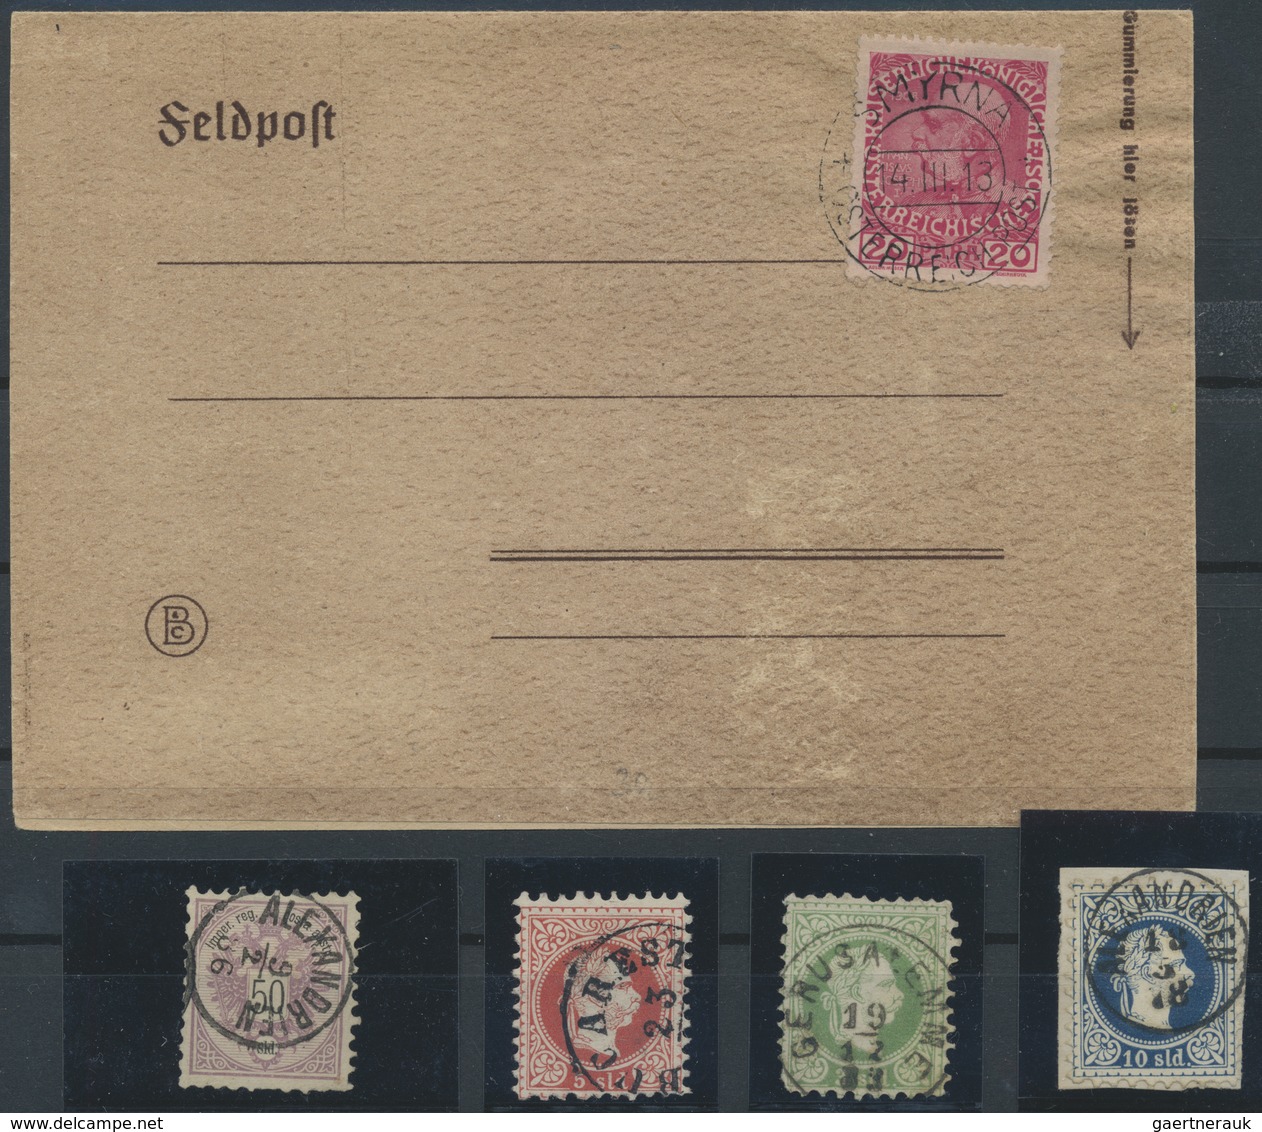 O/Brfst Österreichische Post in der Levante: 1879/1912, sehr interessanter Posten mit gestempelten Ausgaben